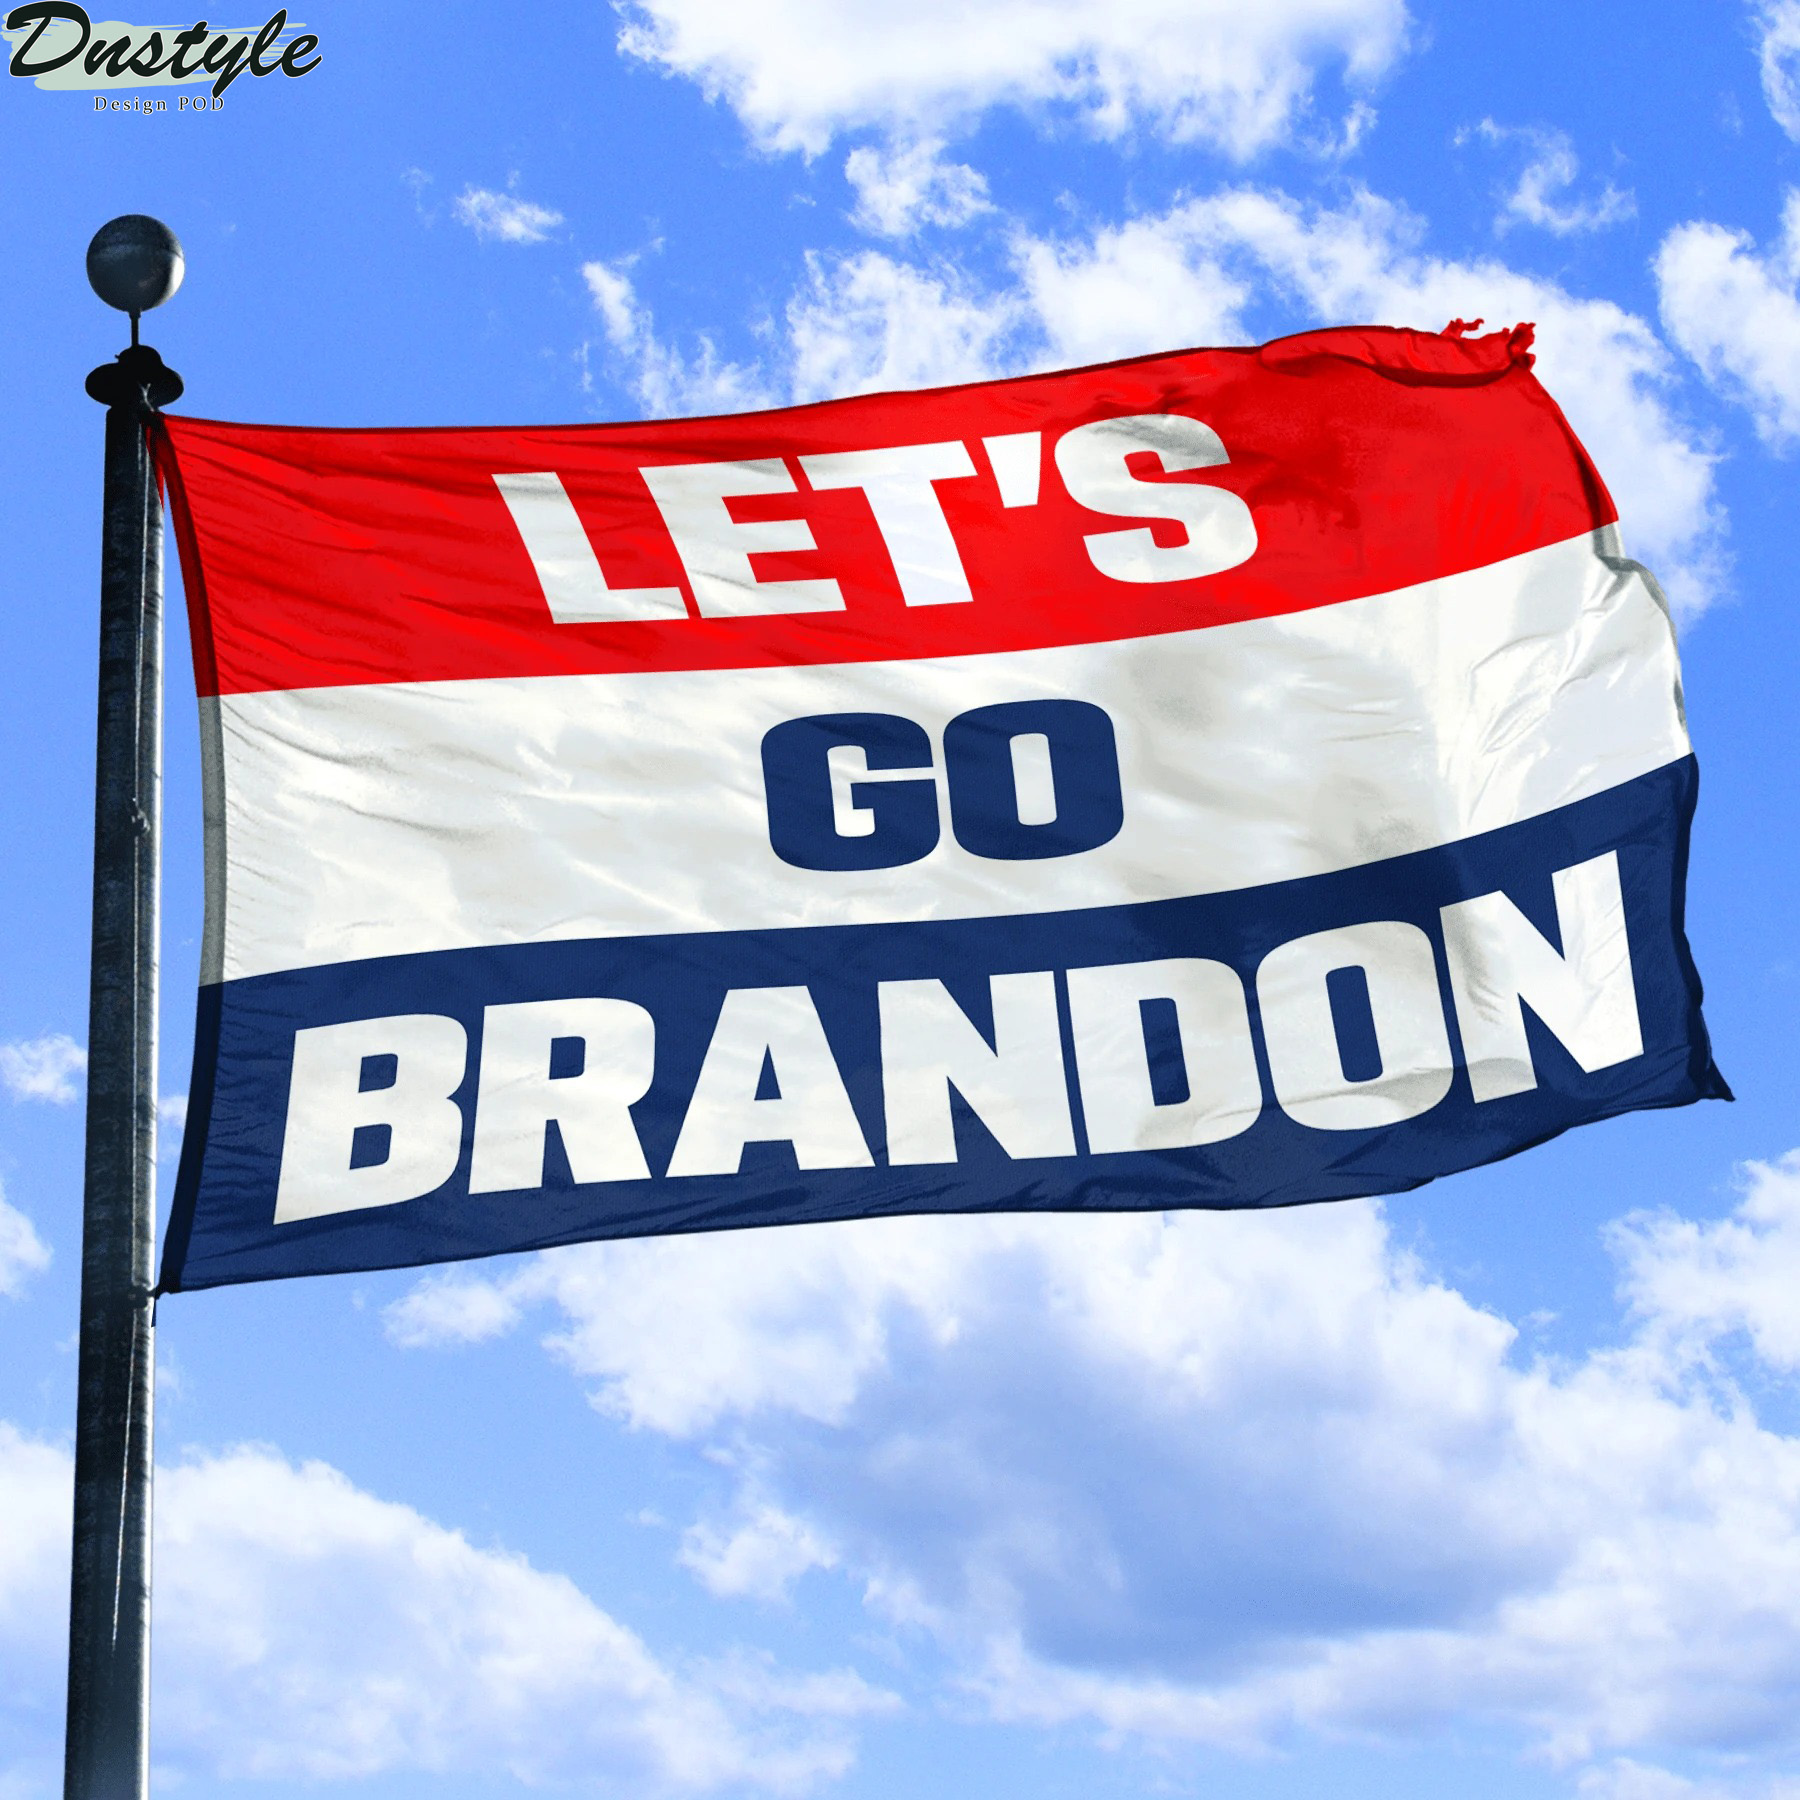 Let’s go brandon flag